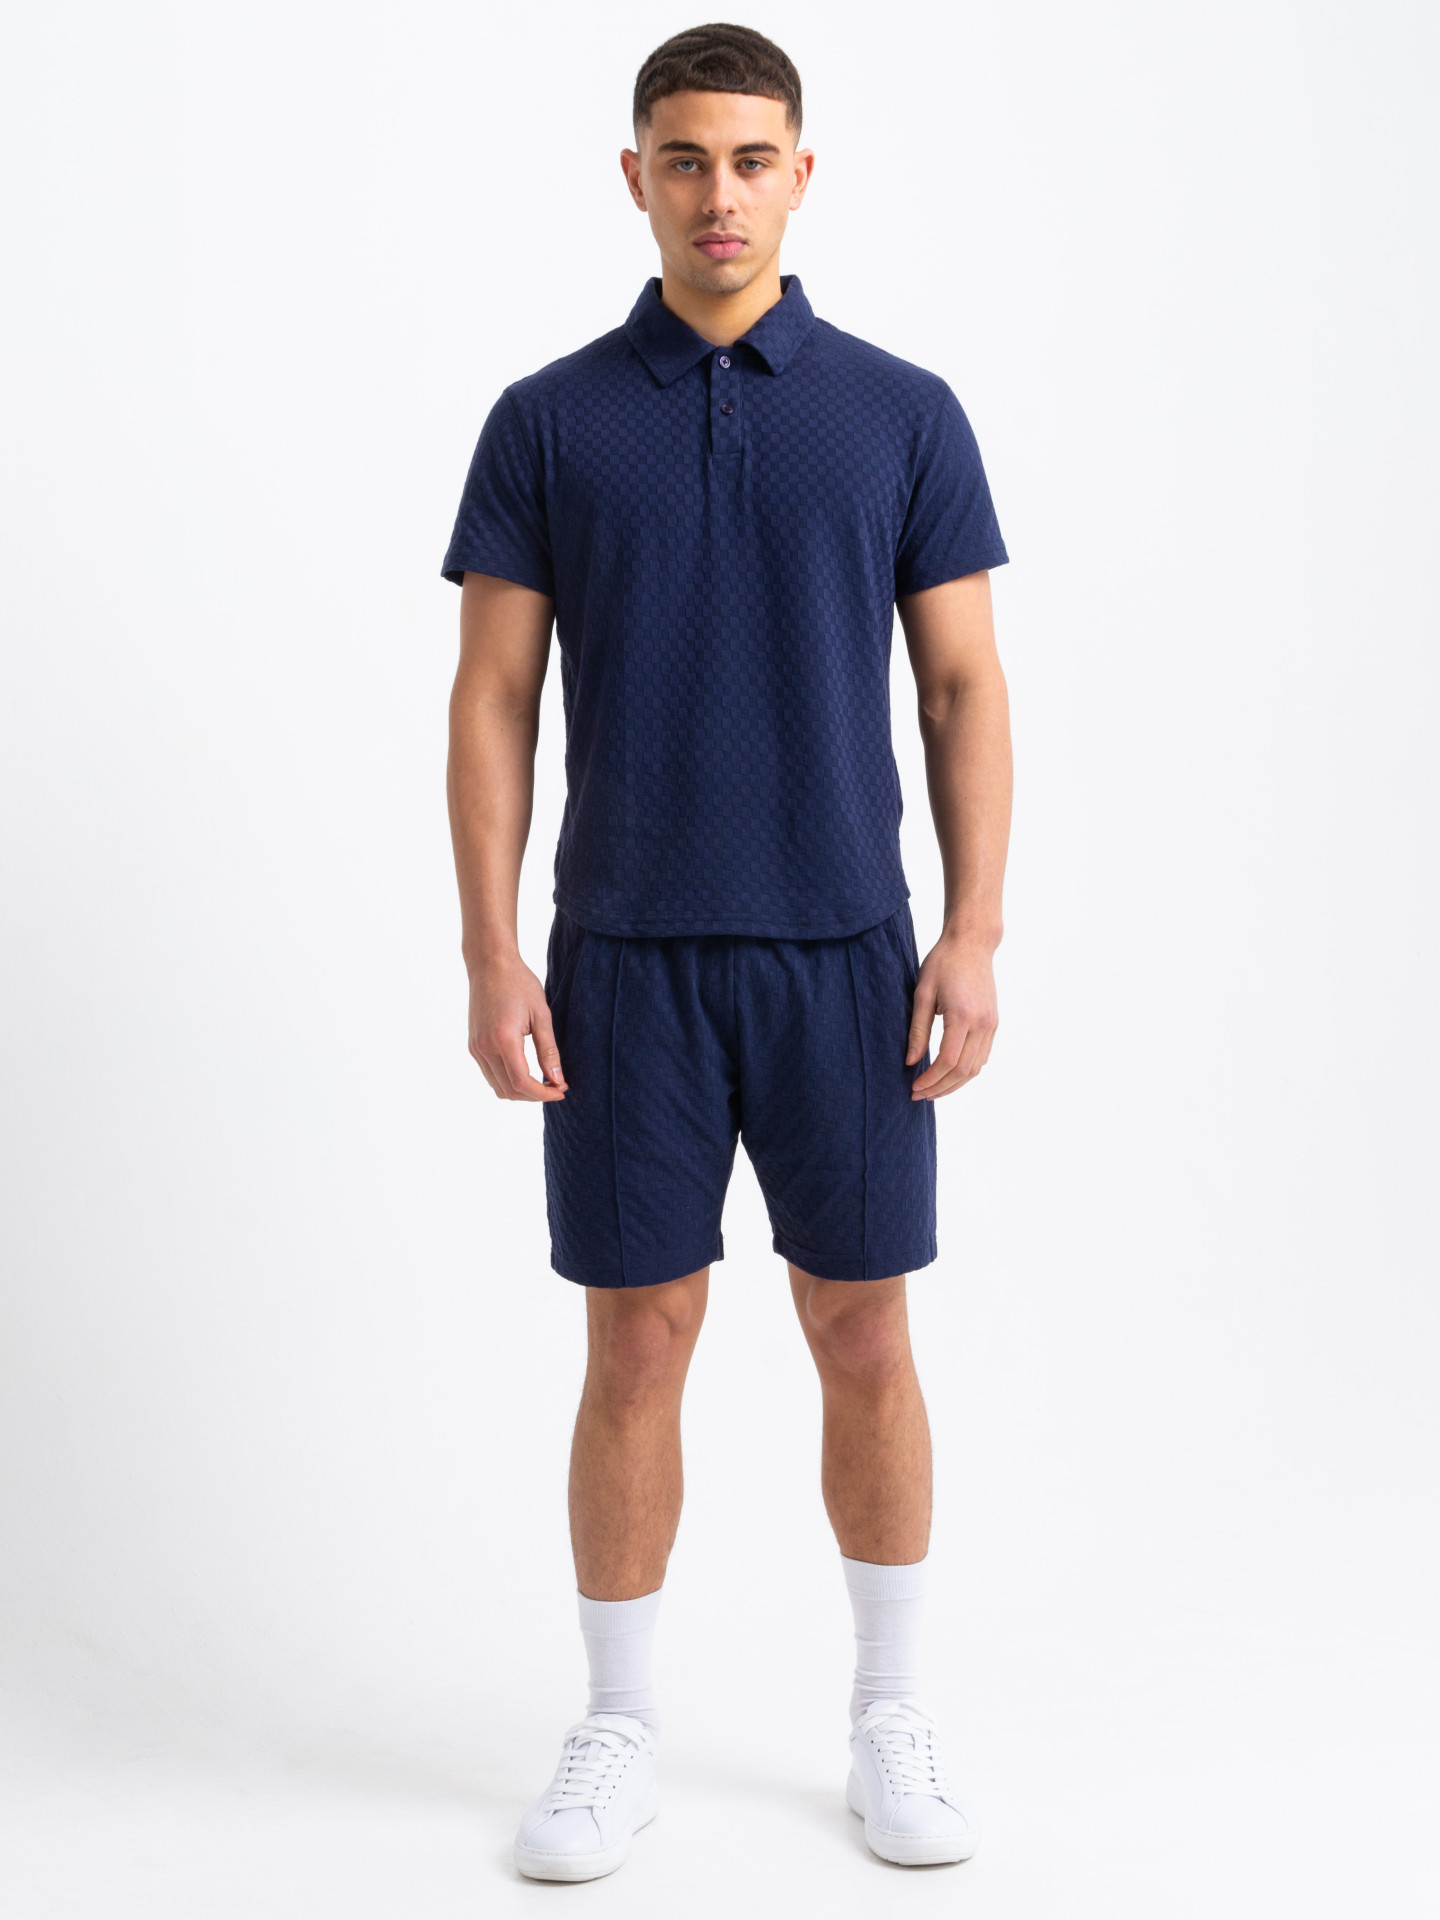 Artisan Polo Collar Set in Navy | Men's Clothing & Fashion | HisColumn